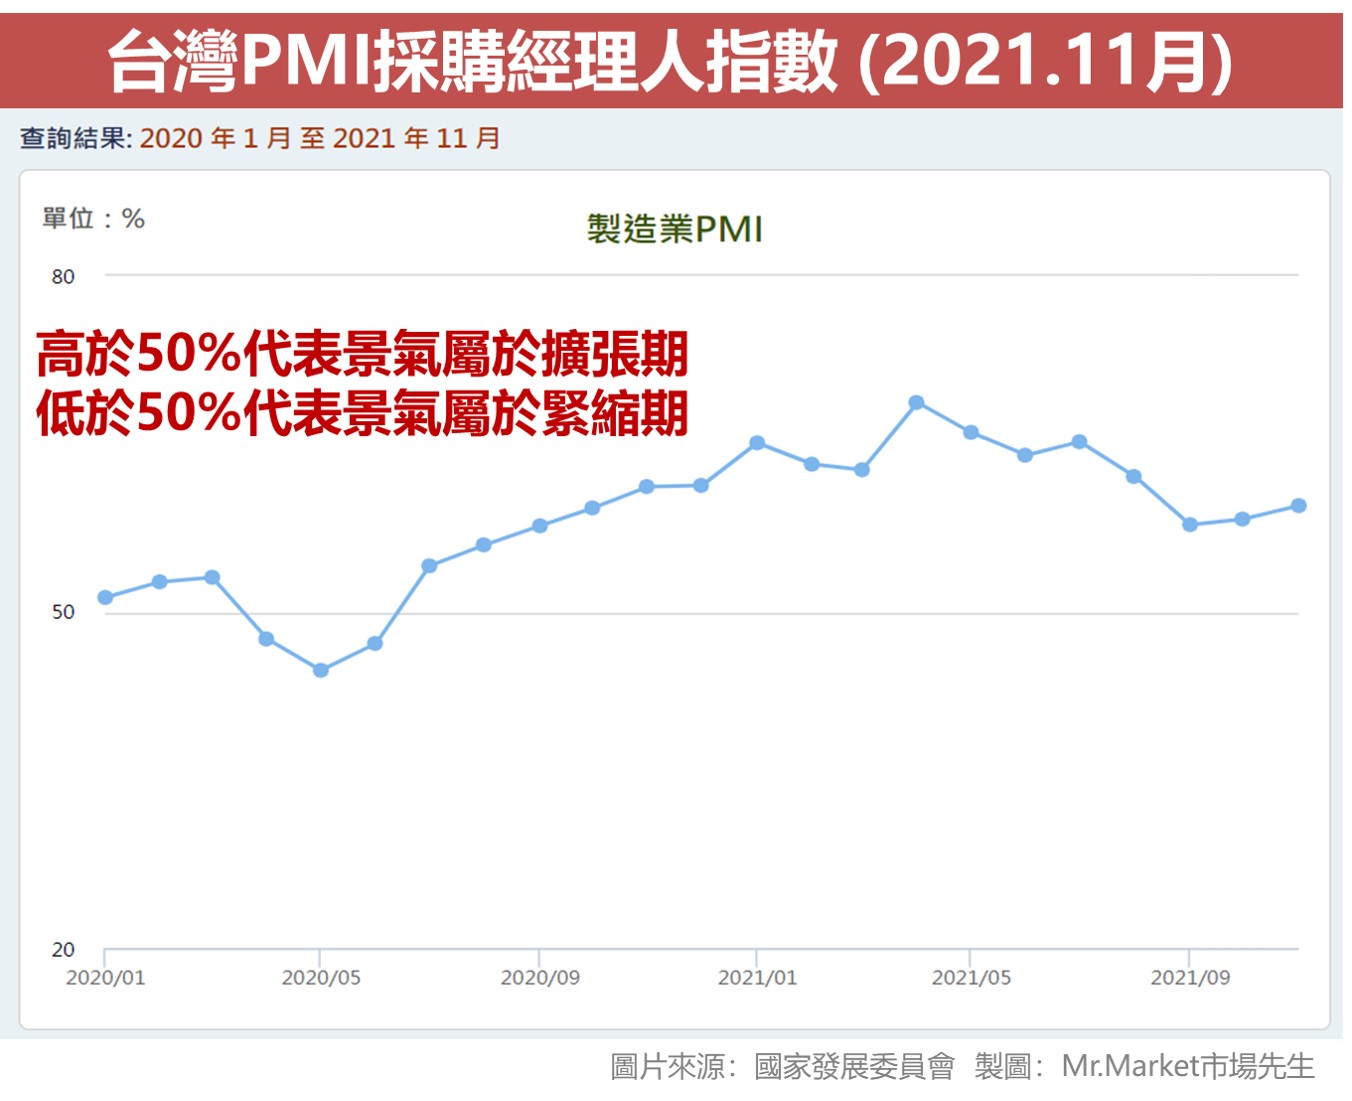 台灣PMI採購經理人指數